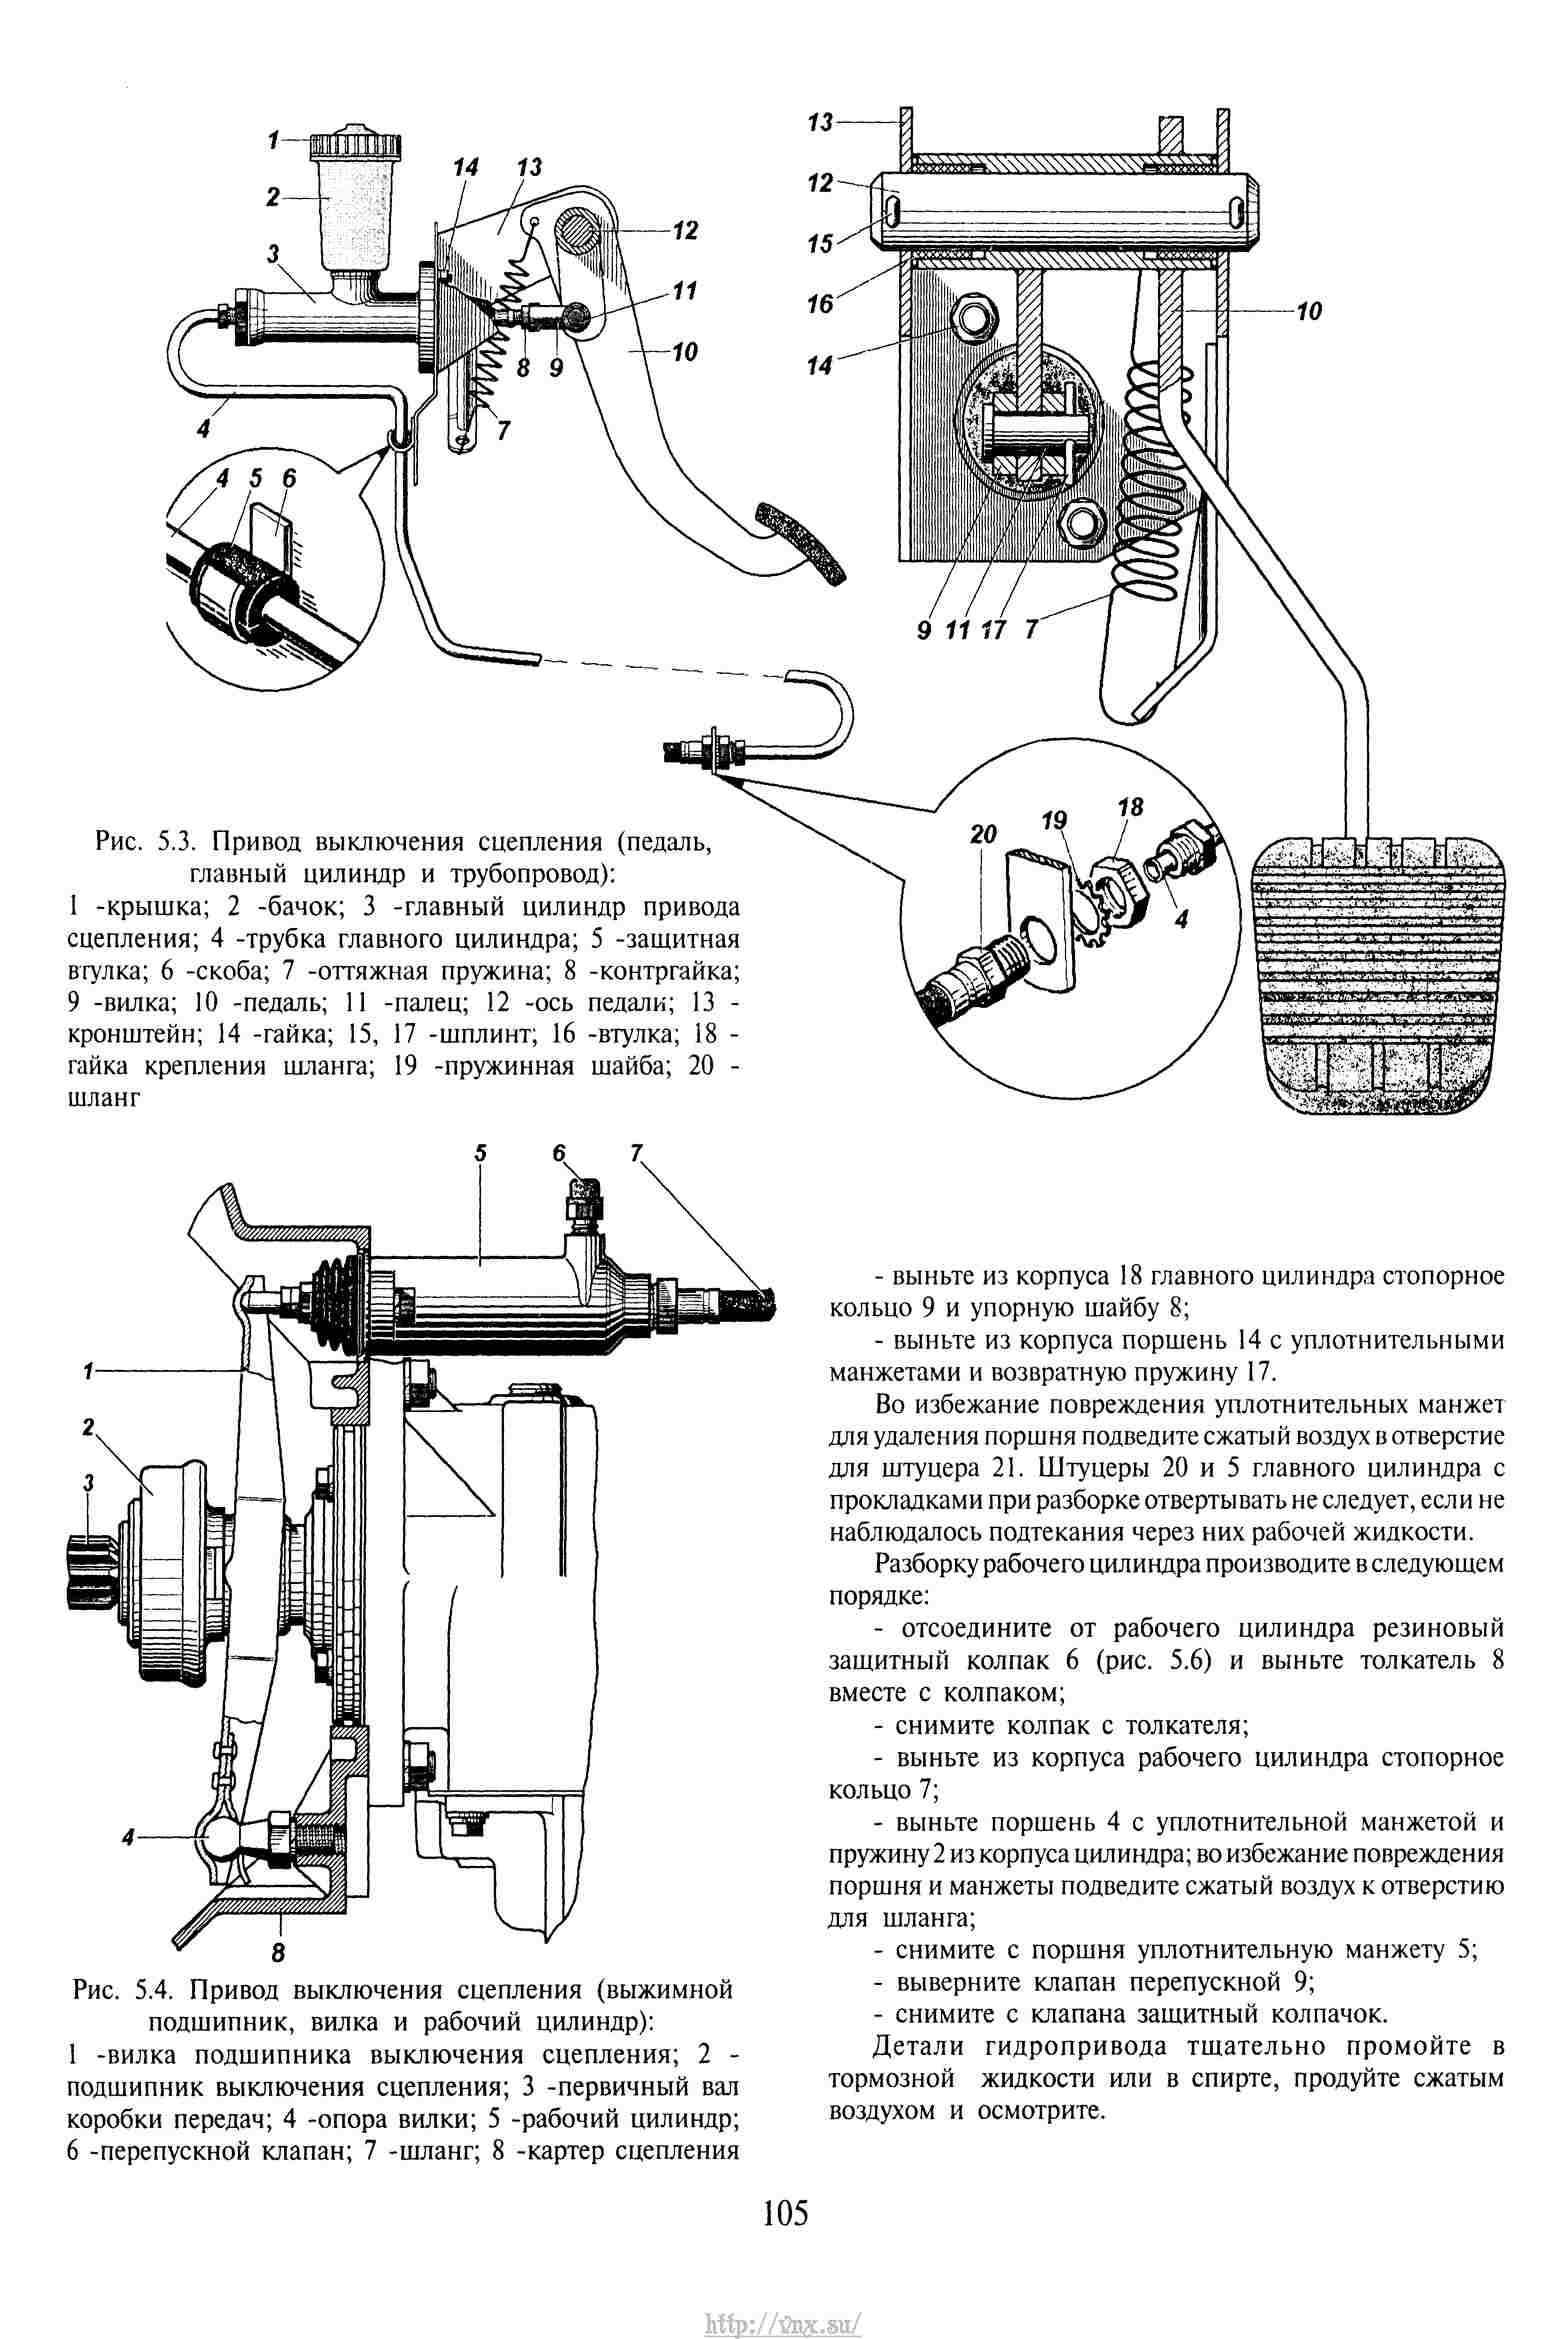 УАЗ 31622 схема система отопления салона